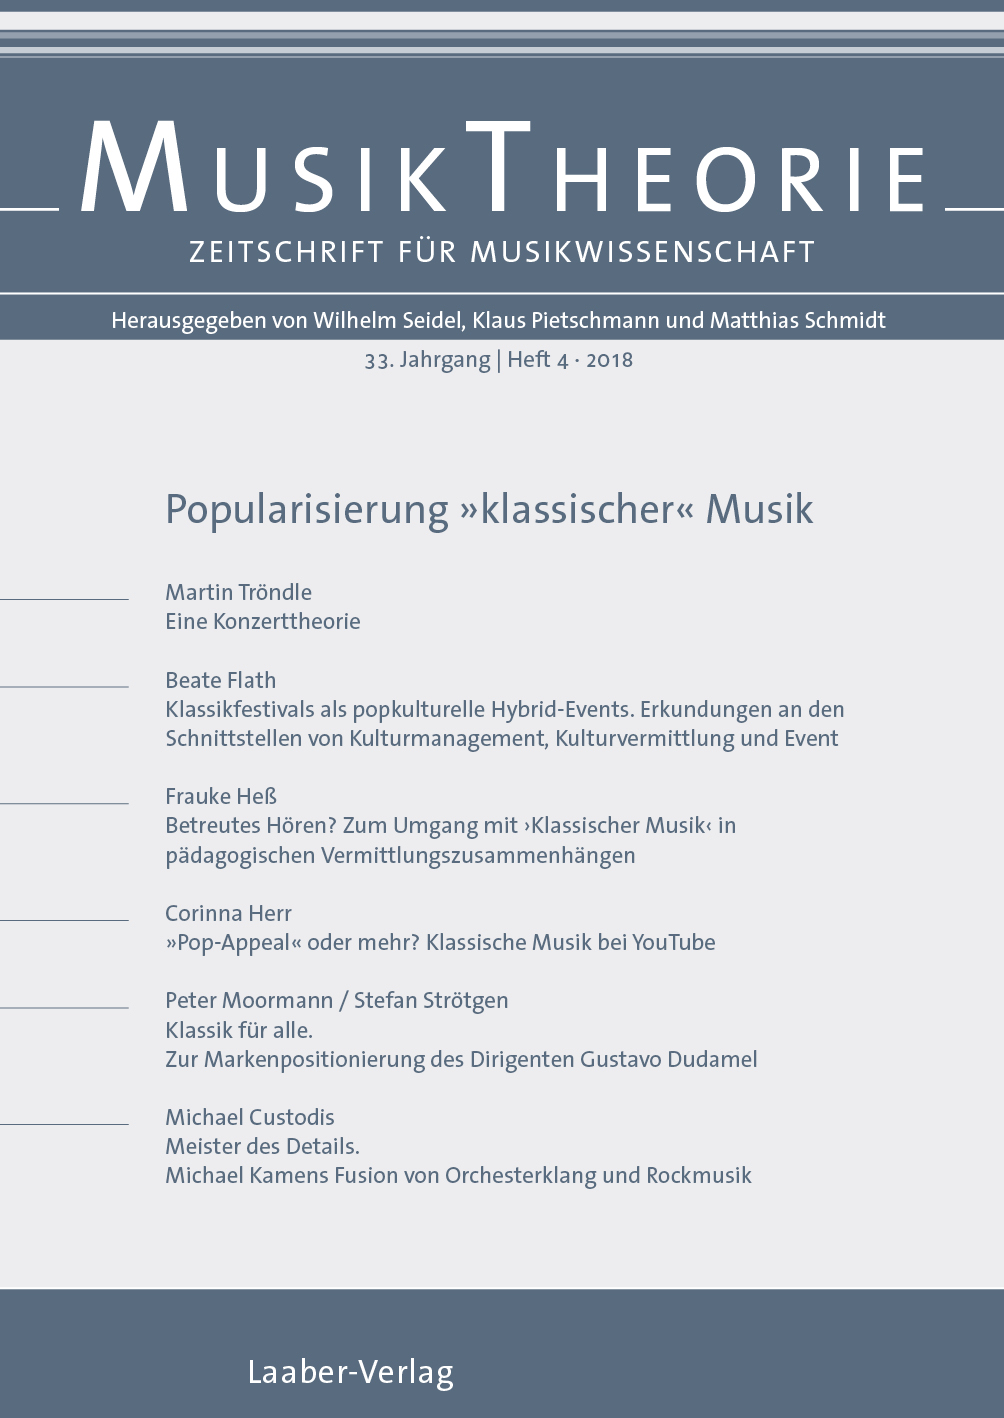 Musiktheorie 4/2018